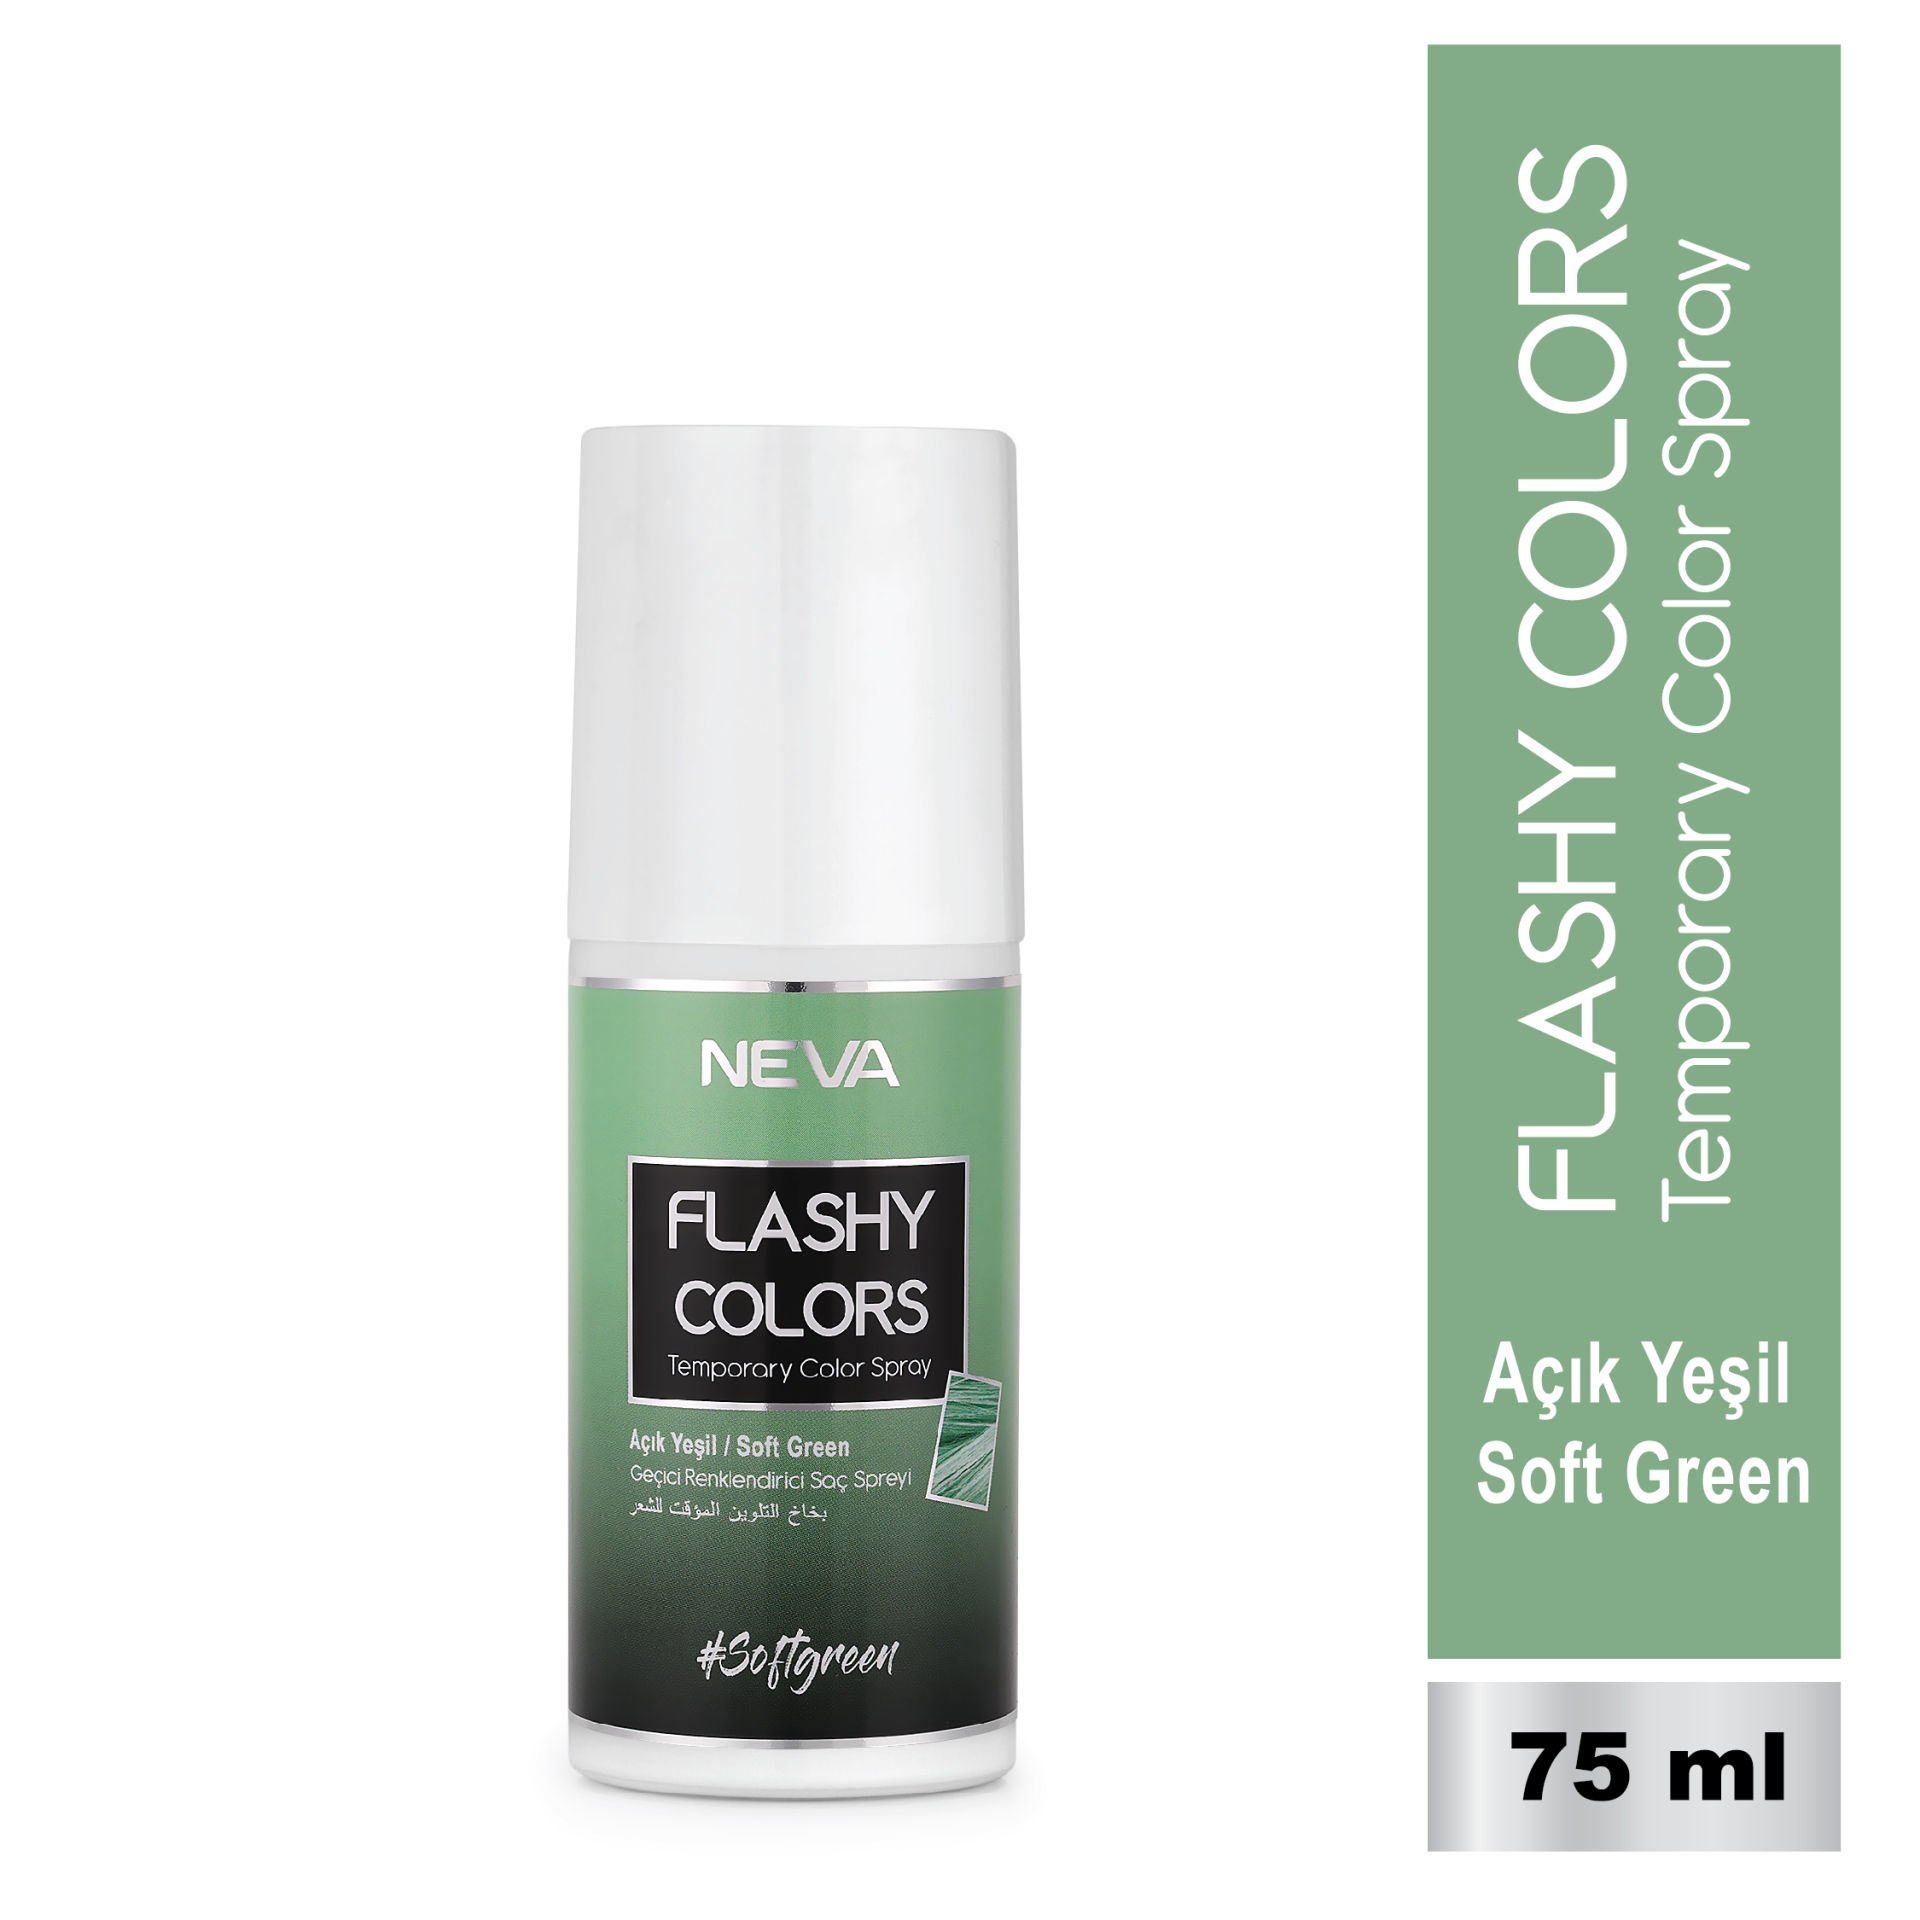 Flashy Colors Geçici Renk Saç Spreyi - Açık Yeşil 75 ml